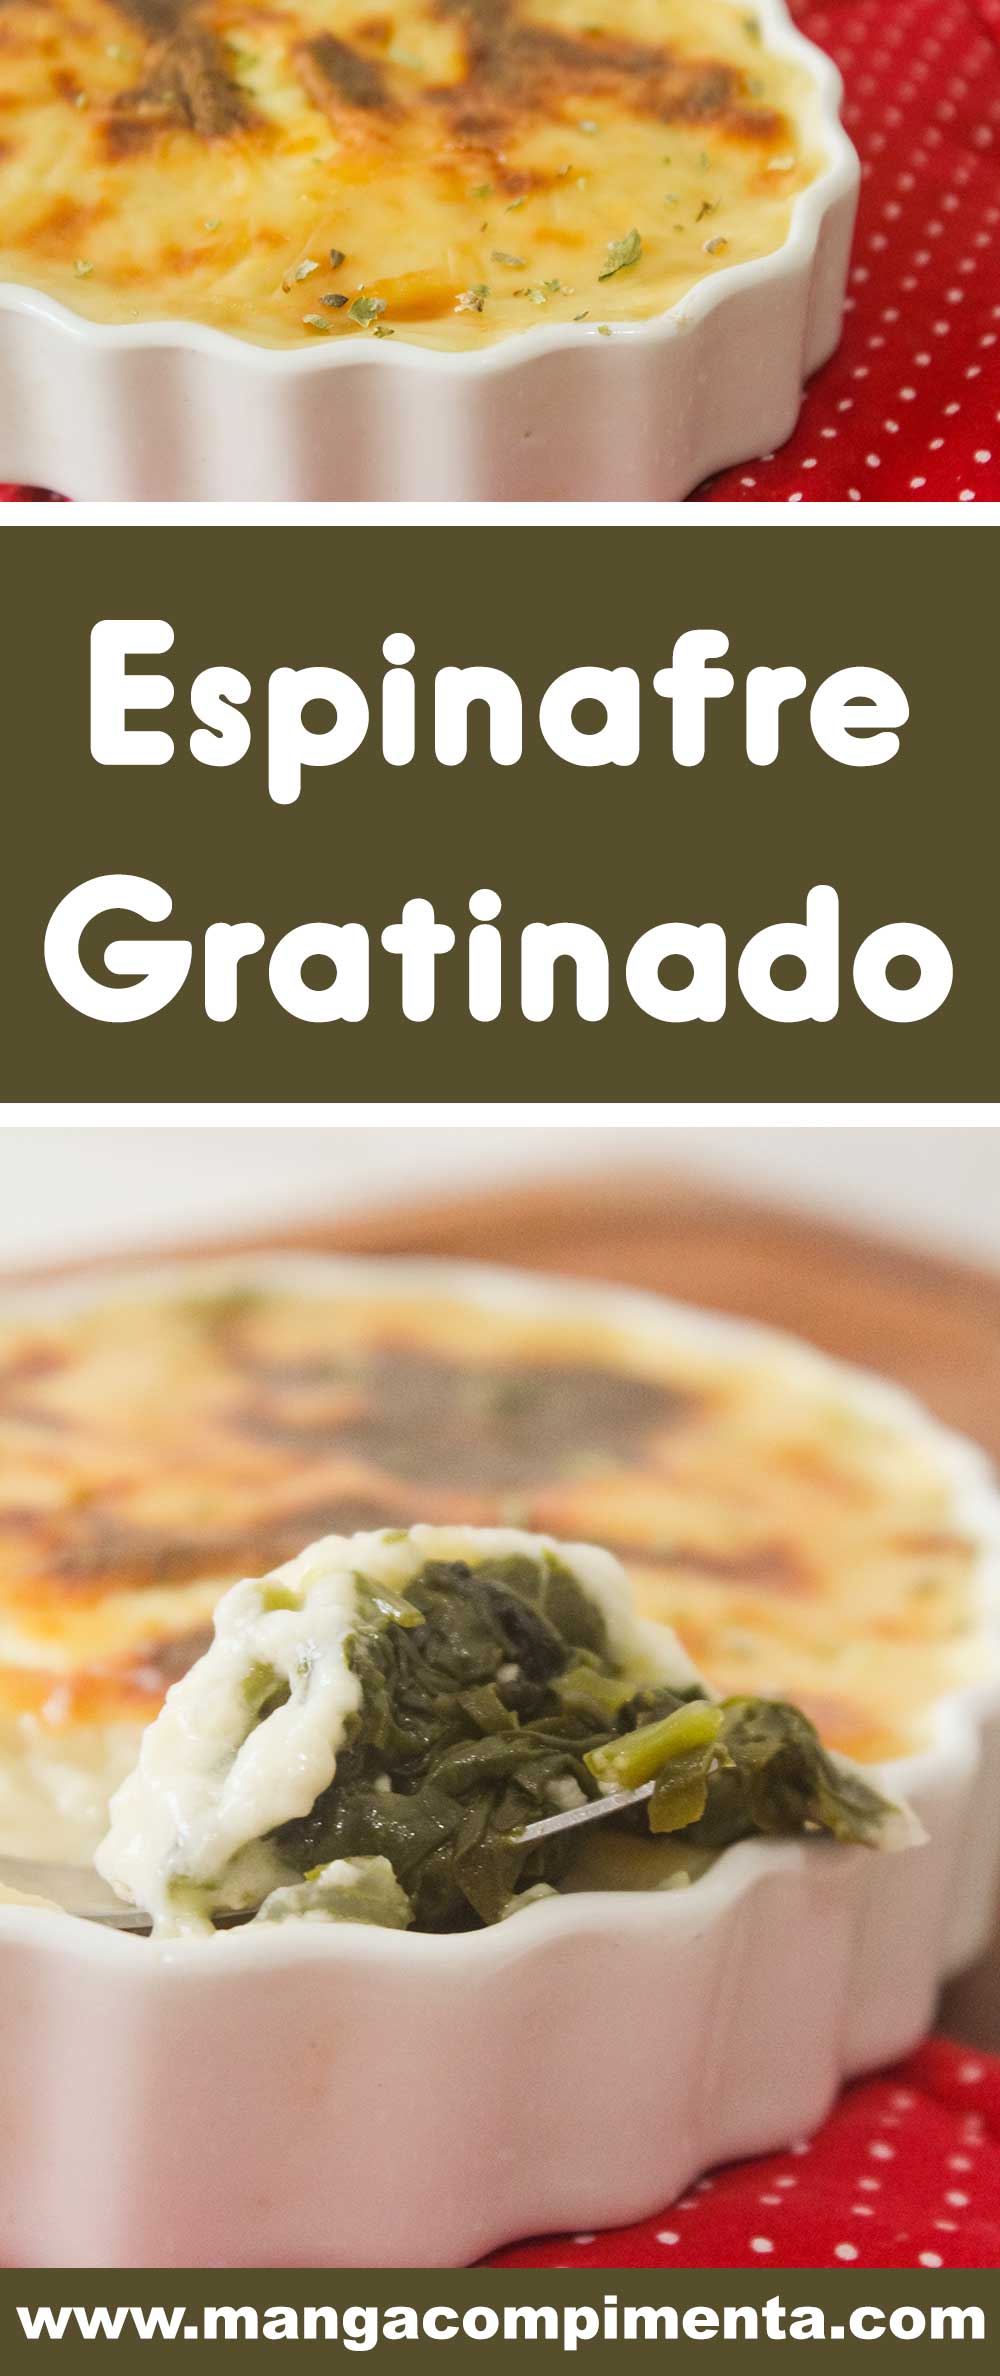 Receita de Espinafre Gratinado - prepare para o seu almoço ou jantar, prato delicioso!